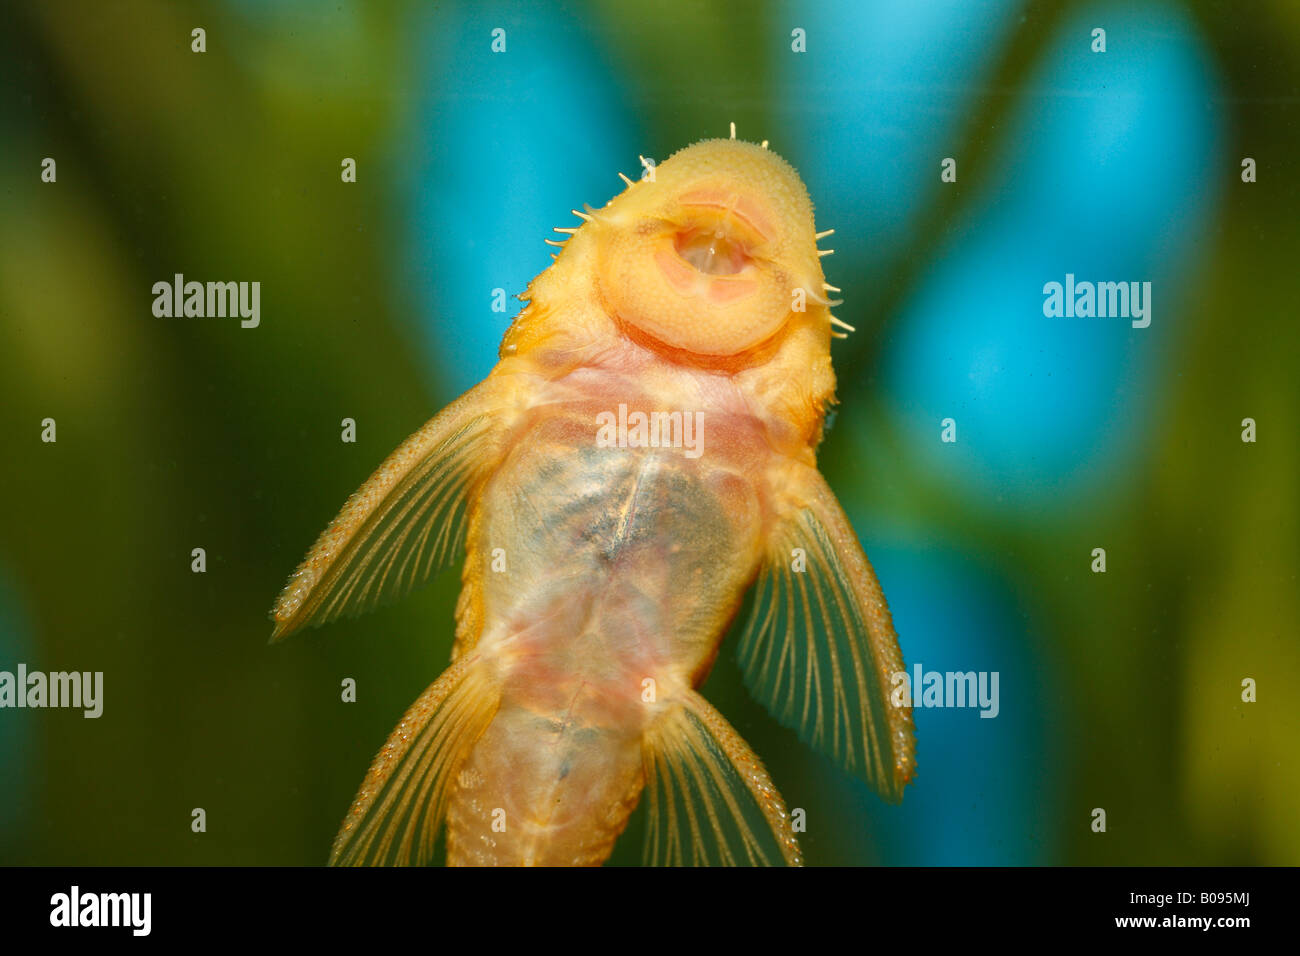 Pleco, Ancistrus jaune (Ancistrus sp. temminickii), L 144, l'homme, de l'eau chaude, l'eau douce aquarium, attaché au verre avec sucker Banque D'Images